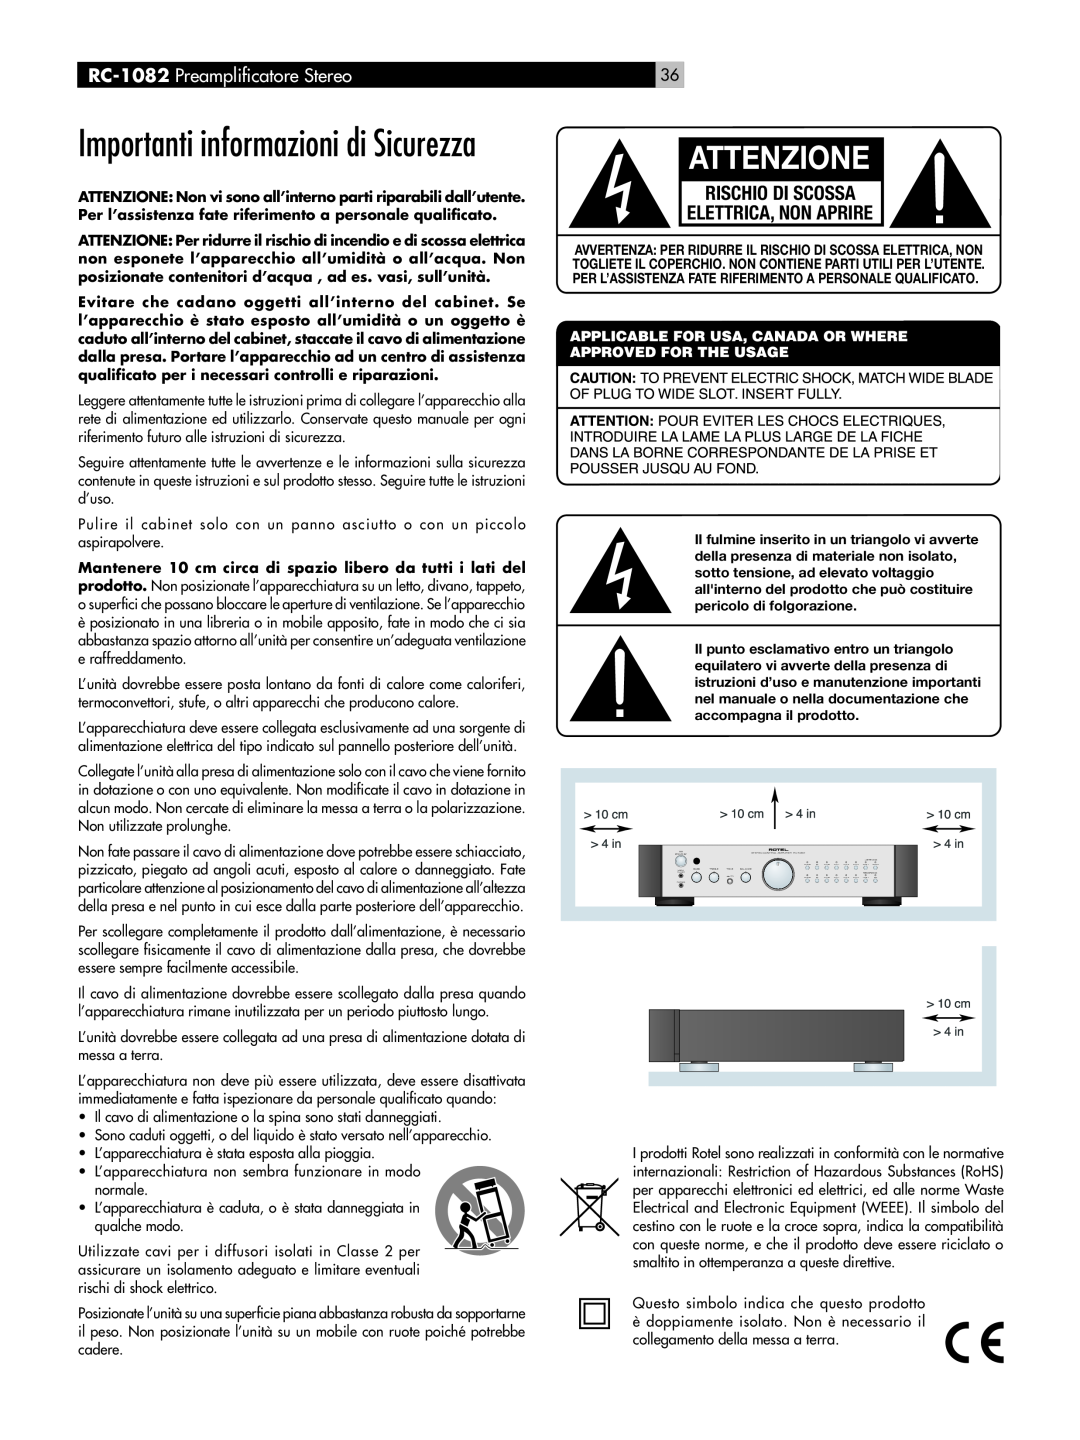 Rotel RC-1082 owner manual Attenzione, Importanti informazioni di Sicurezza, Rischio Di Scossa Elettrica, Non Aprire 